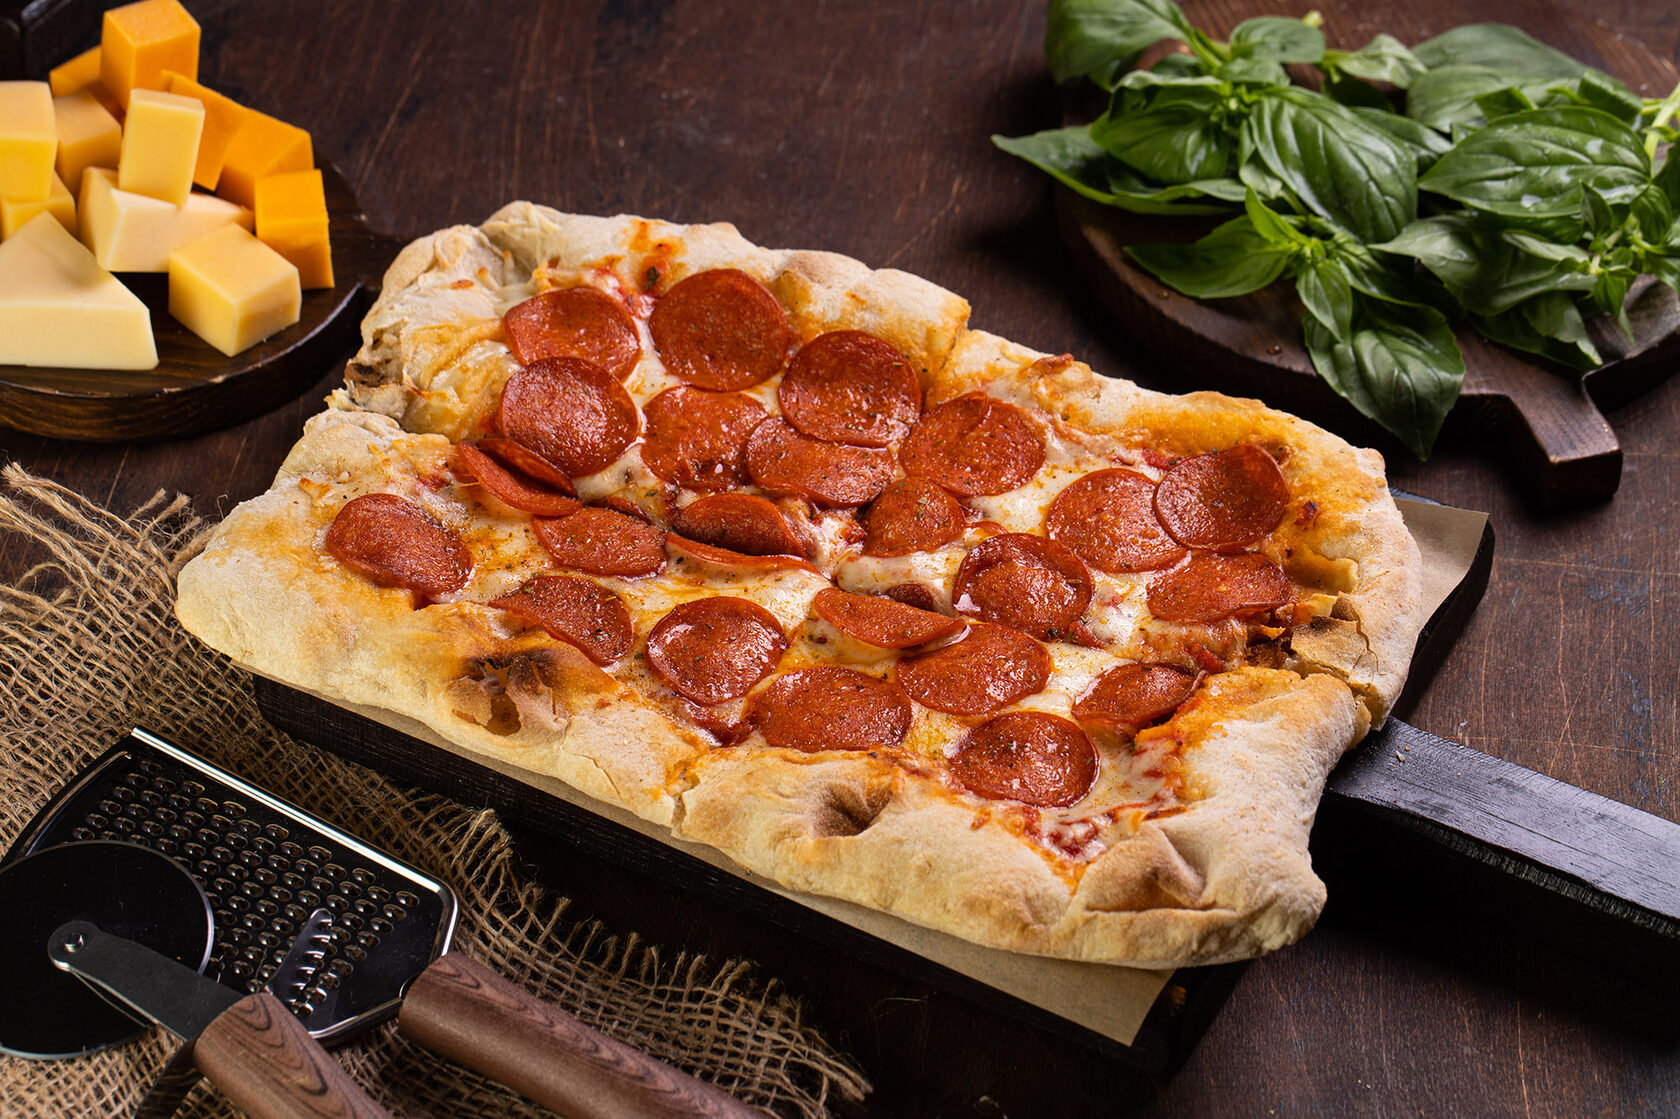 я хочу пиццу песто с пепперони и сосисками так же хочу другую с оливками фото 101